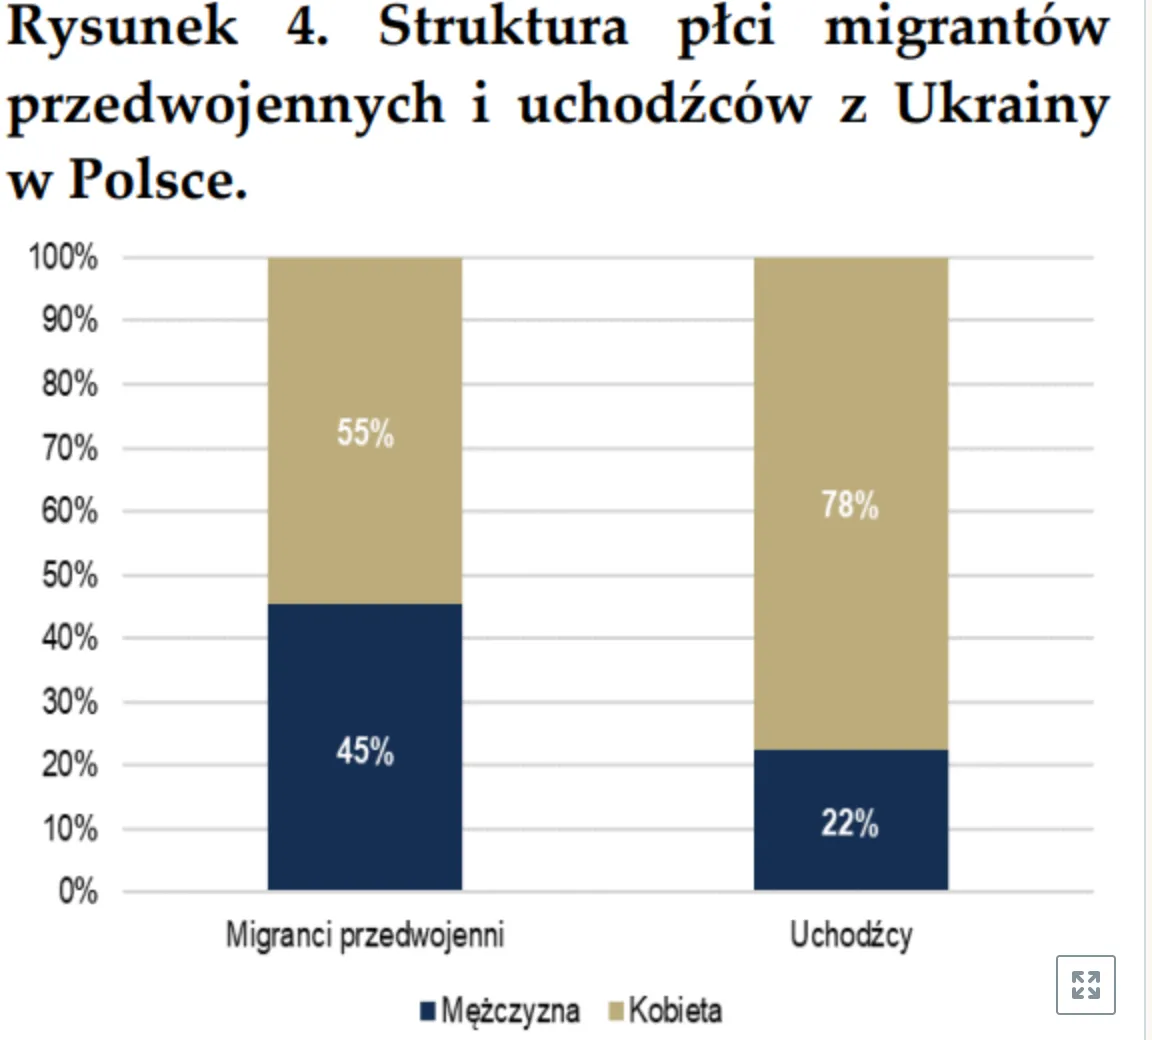 Нацбанк Польши сделал исследование о мигрантах из Украины